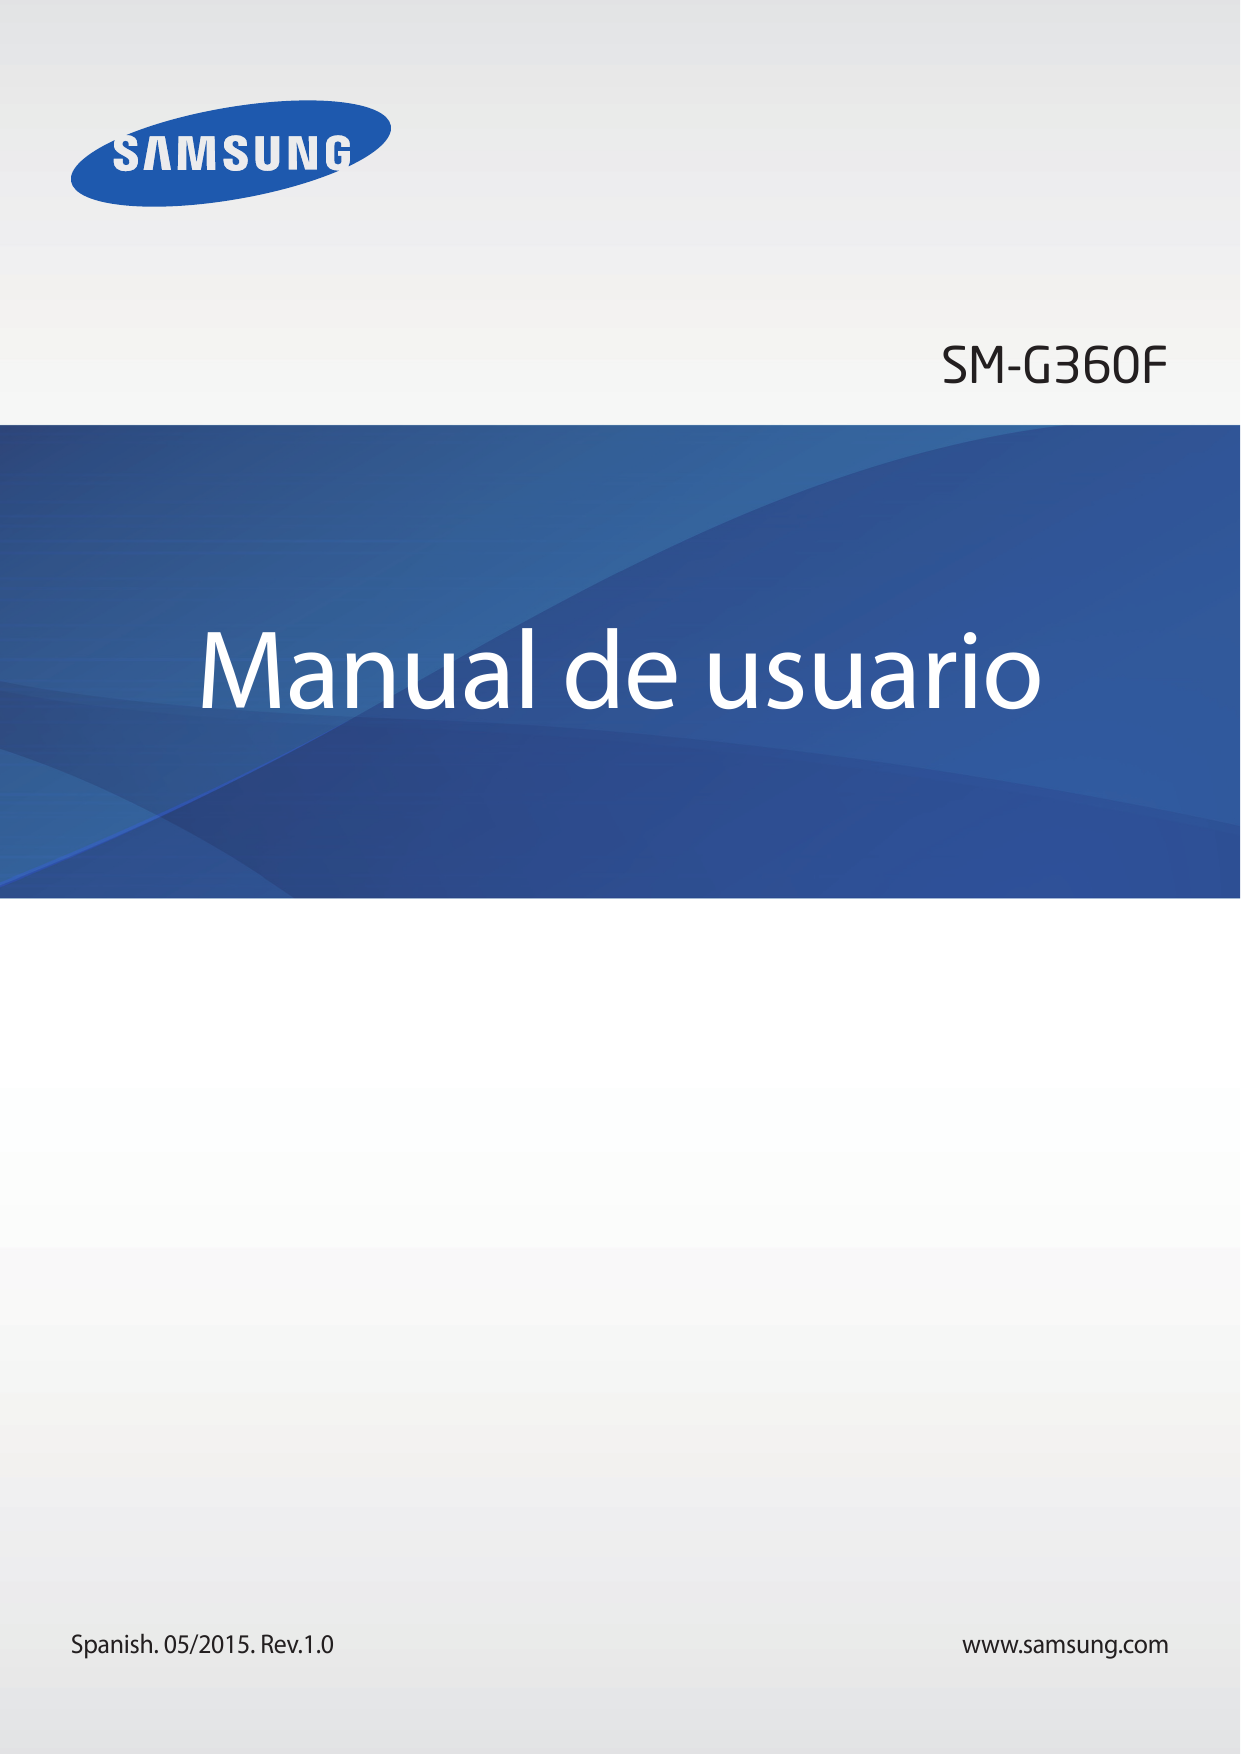 SM-G360FManual de usuarioSpanish. 05/2015. Rev.1.0www.samsung.com